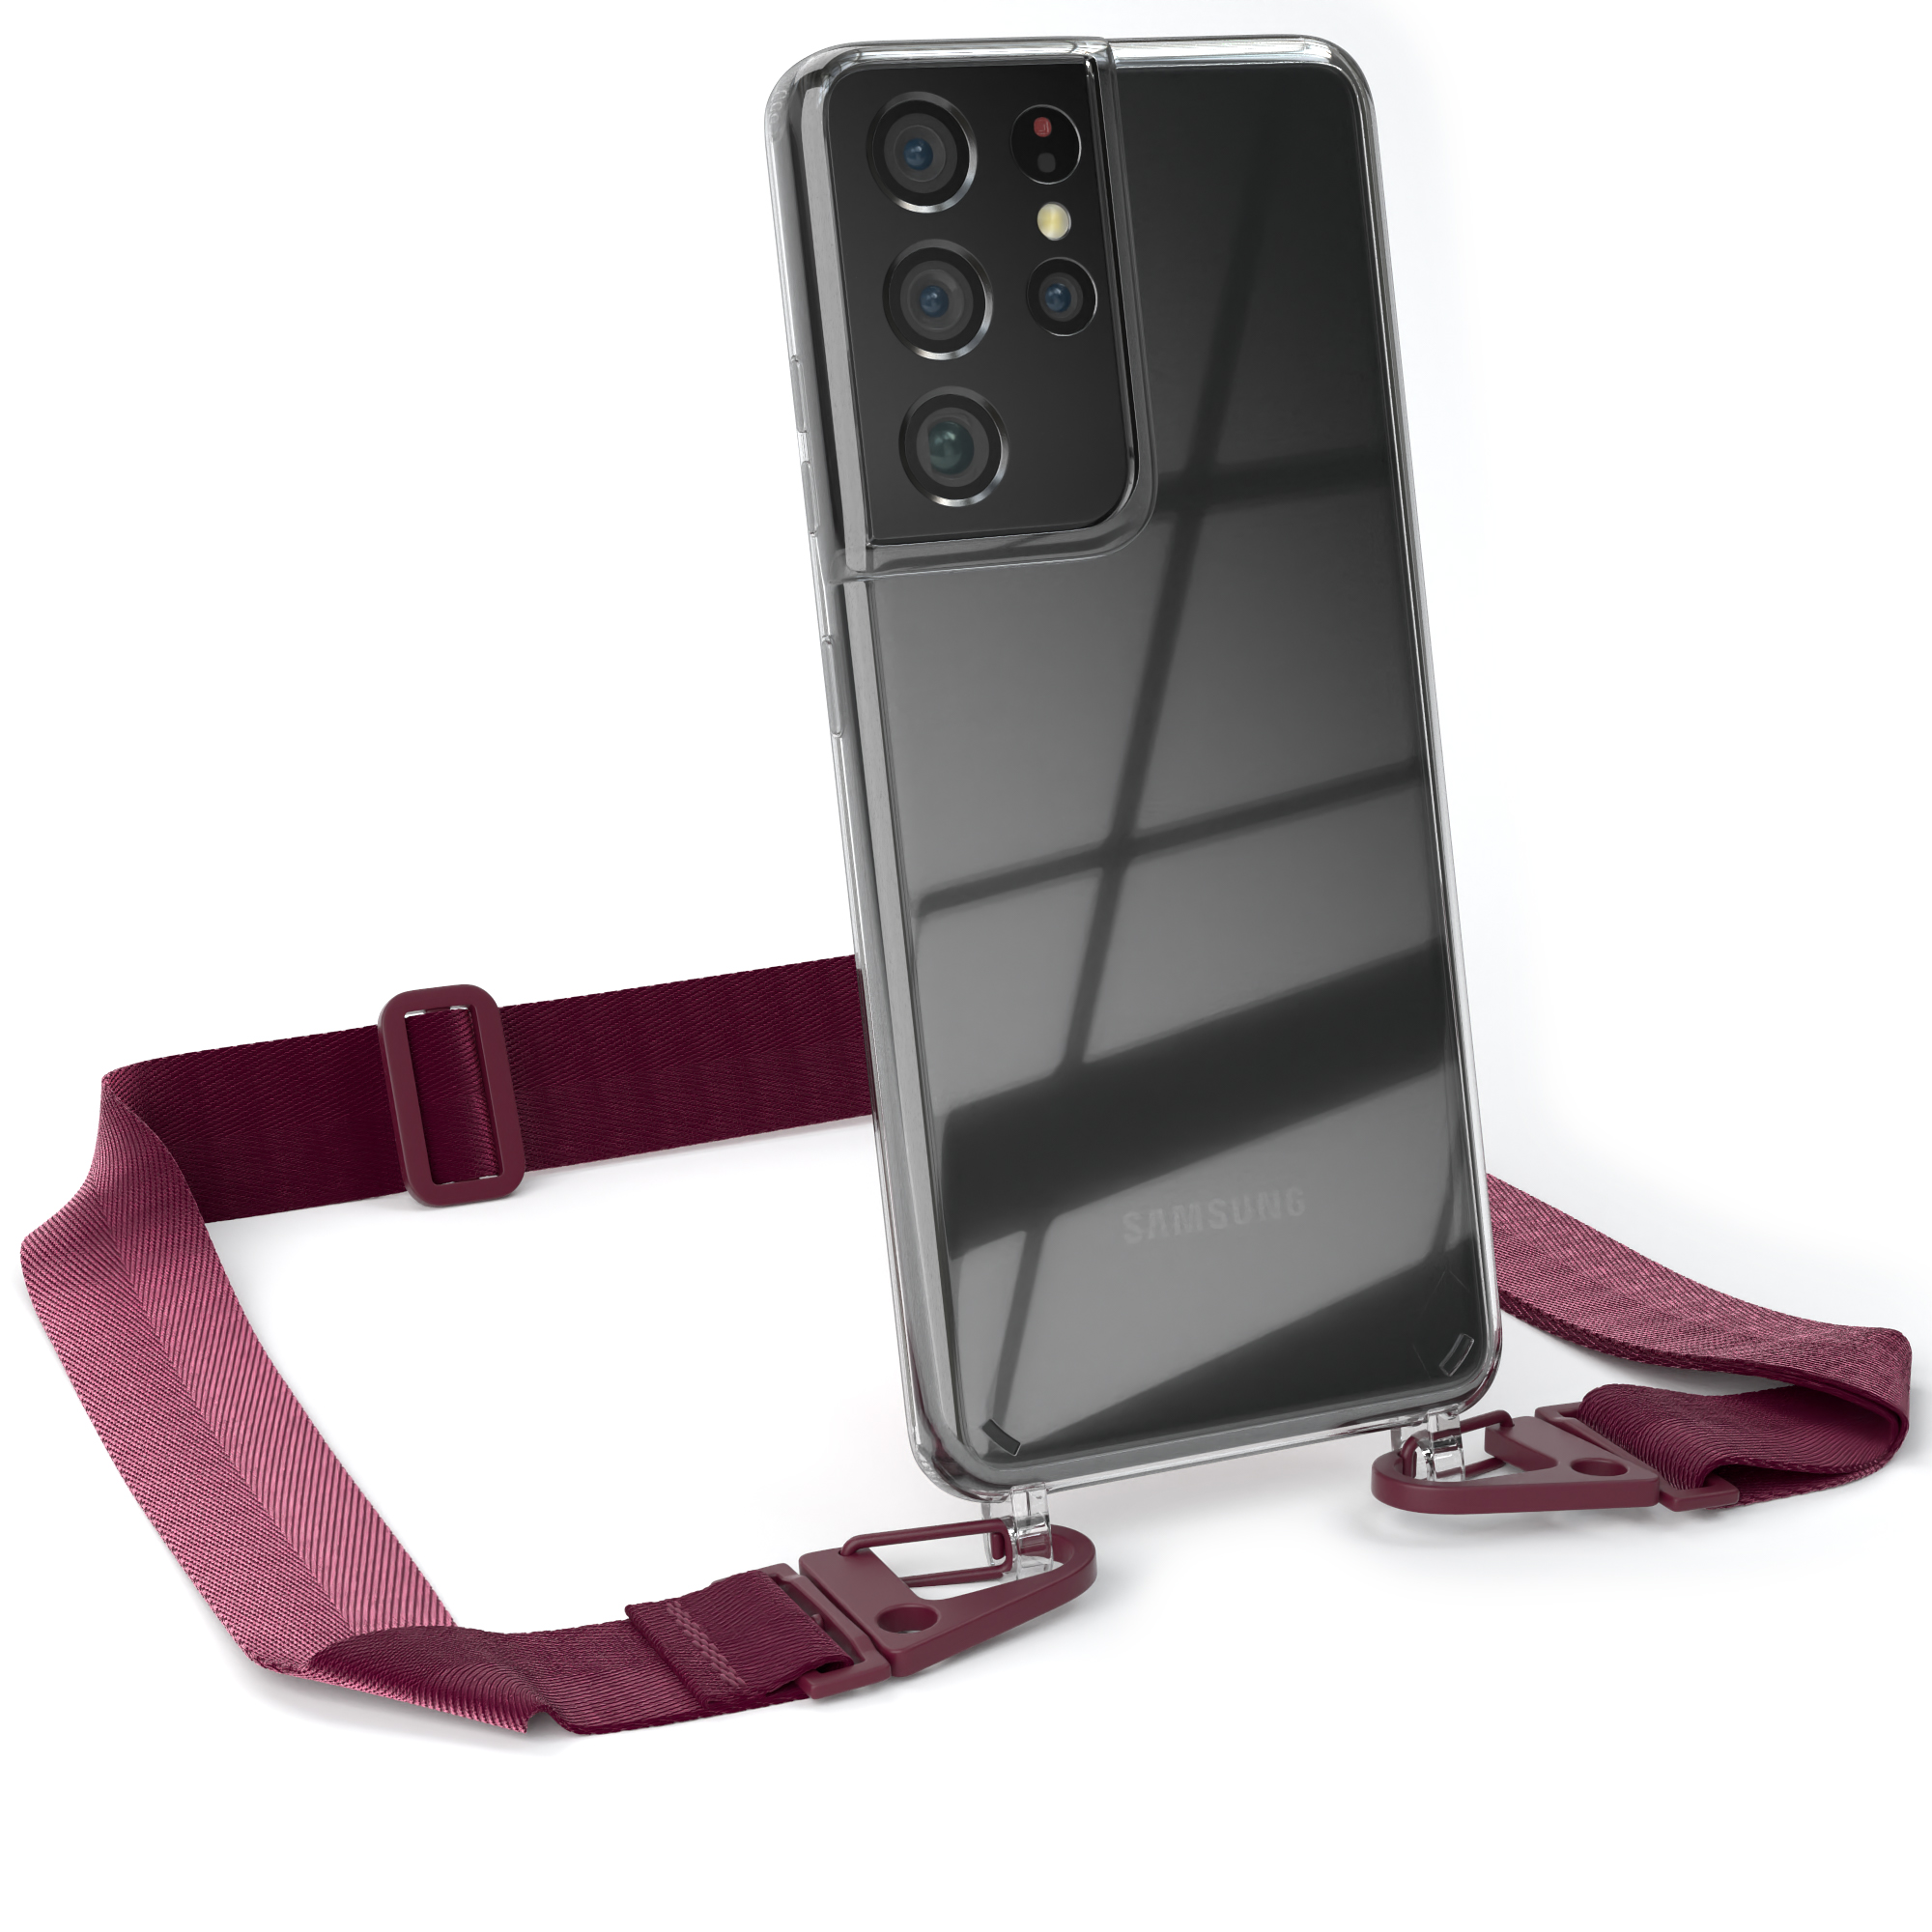 EAZY CASE Galaxy Samsung, Beere Handyhülle + Umhängetasche, / Rot Burgundy mit breiter Kordel 5G, Karabiner, S21 Ultra Transparente